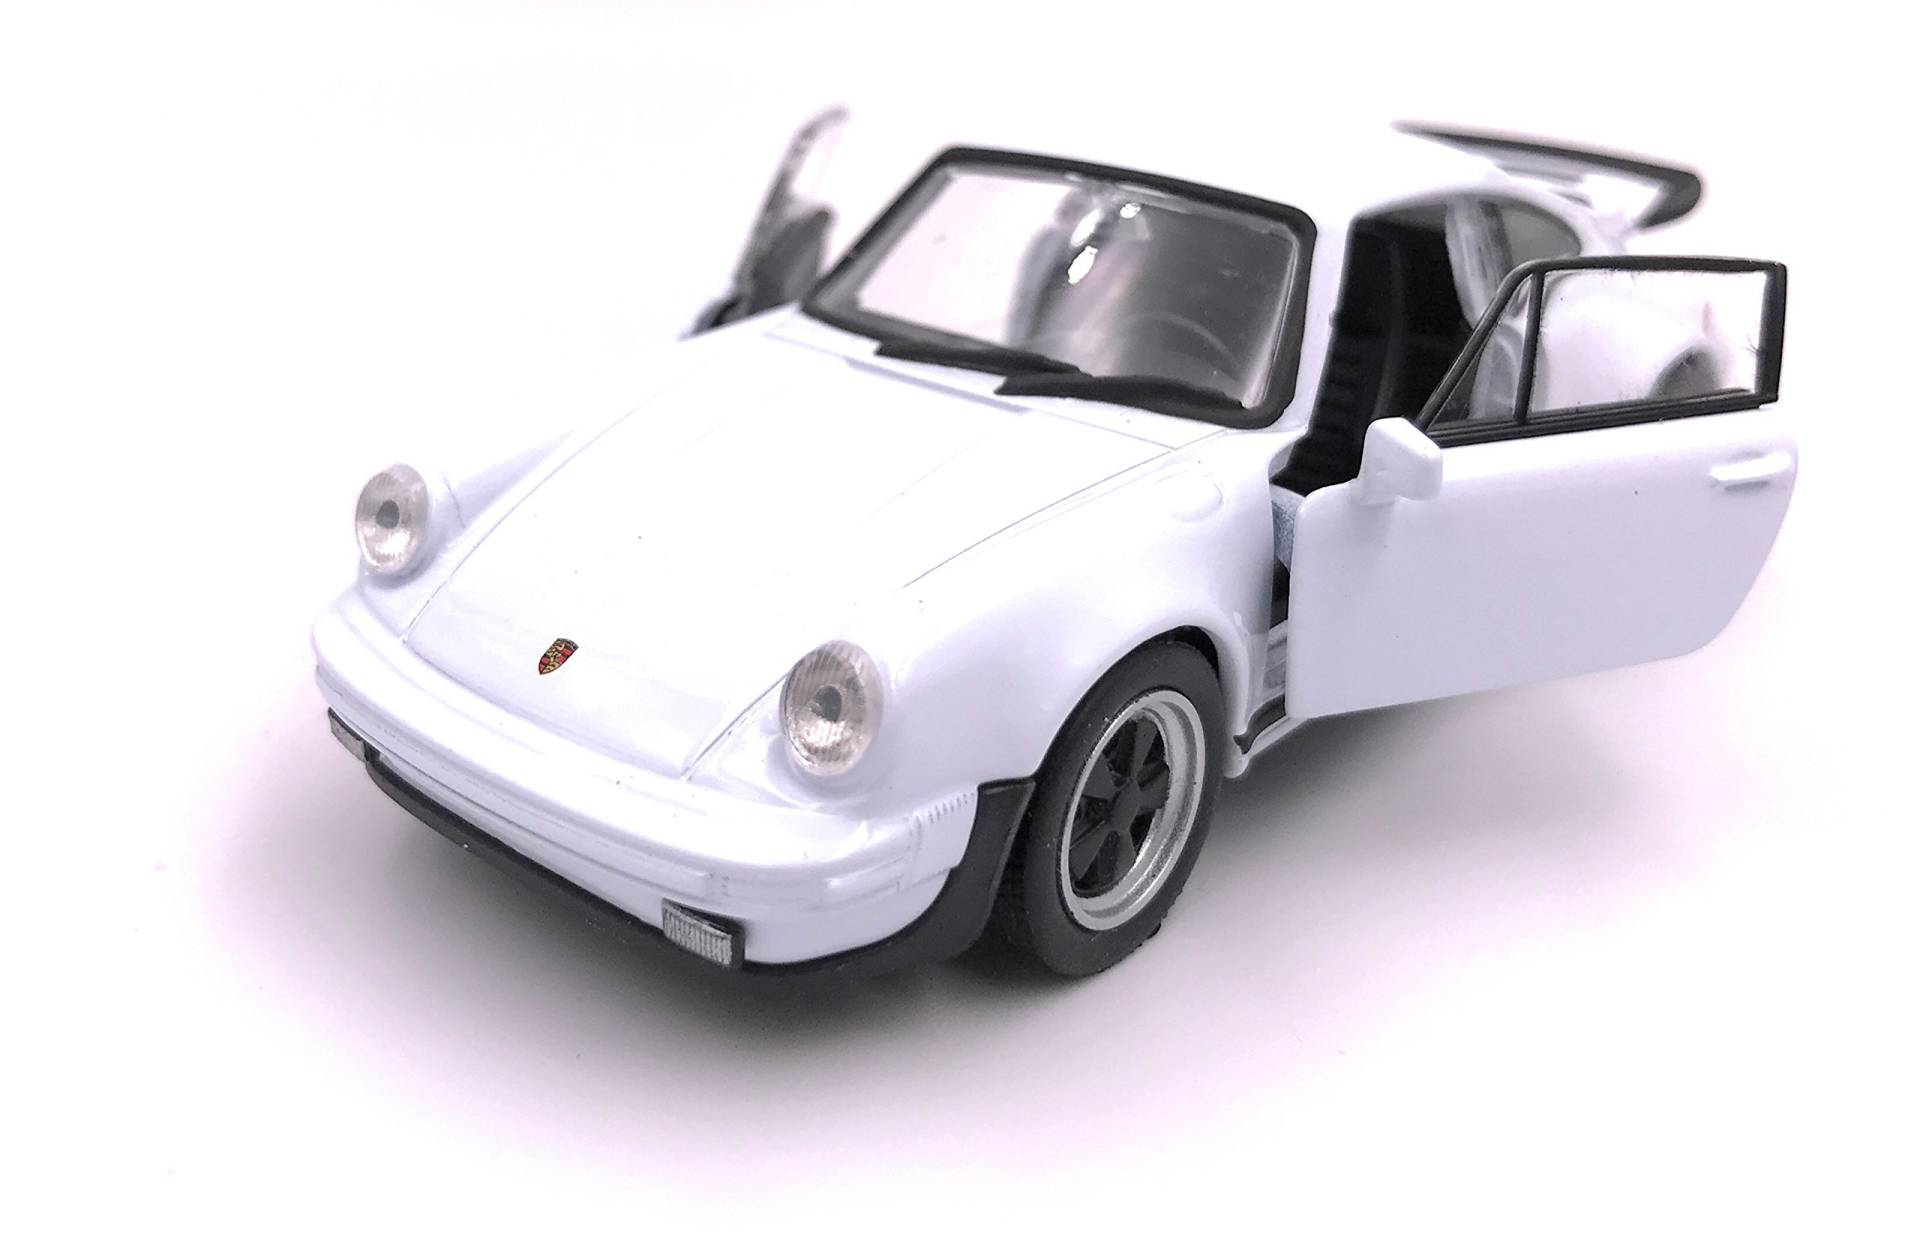 H-Customs Porsche 911 Turbo 930 1975 Modellauto Auto Lizenzprodukt 1:34 zufällige Farbauswahl von H-Customs